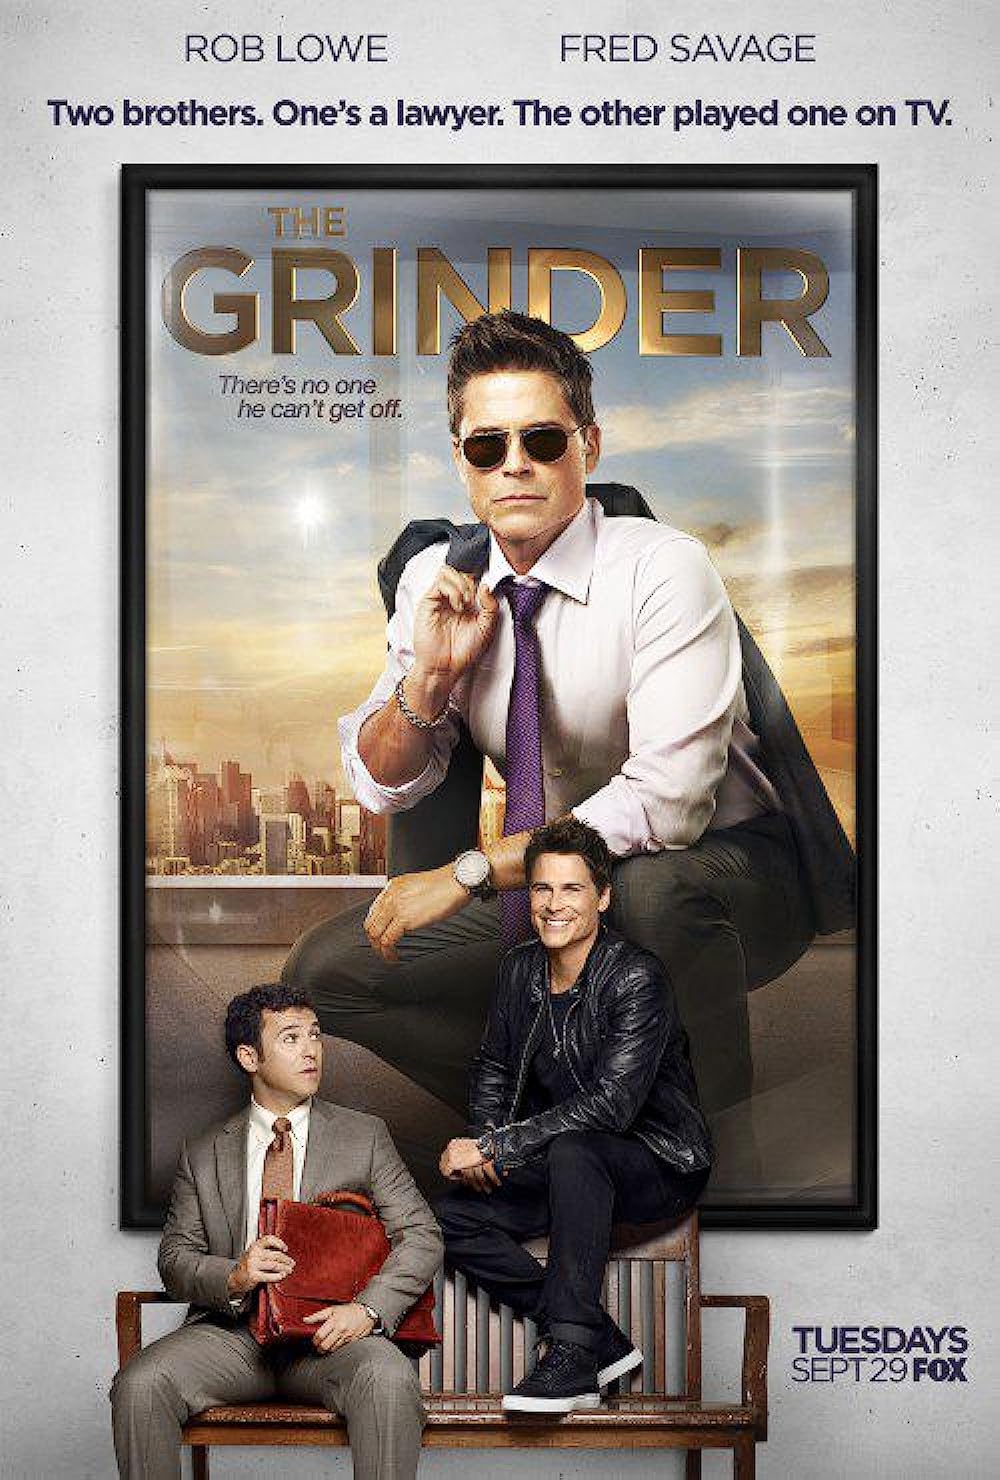 The Grinder poster